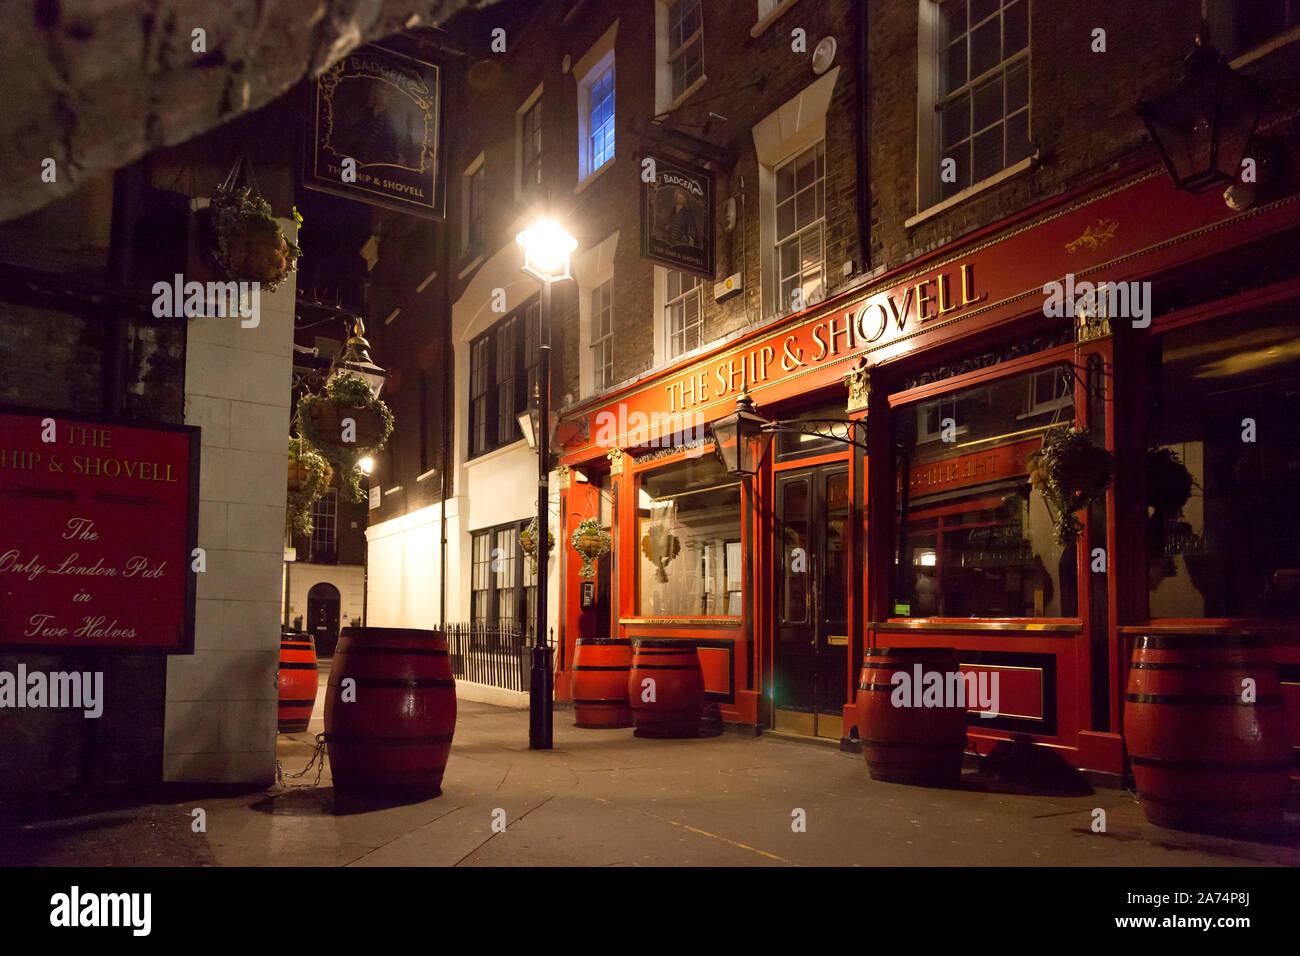 Nave e Shovell pub di notte, Charing Cross, Londra Foto Stock